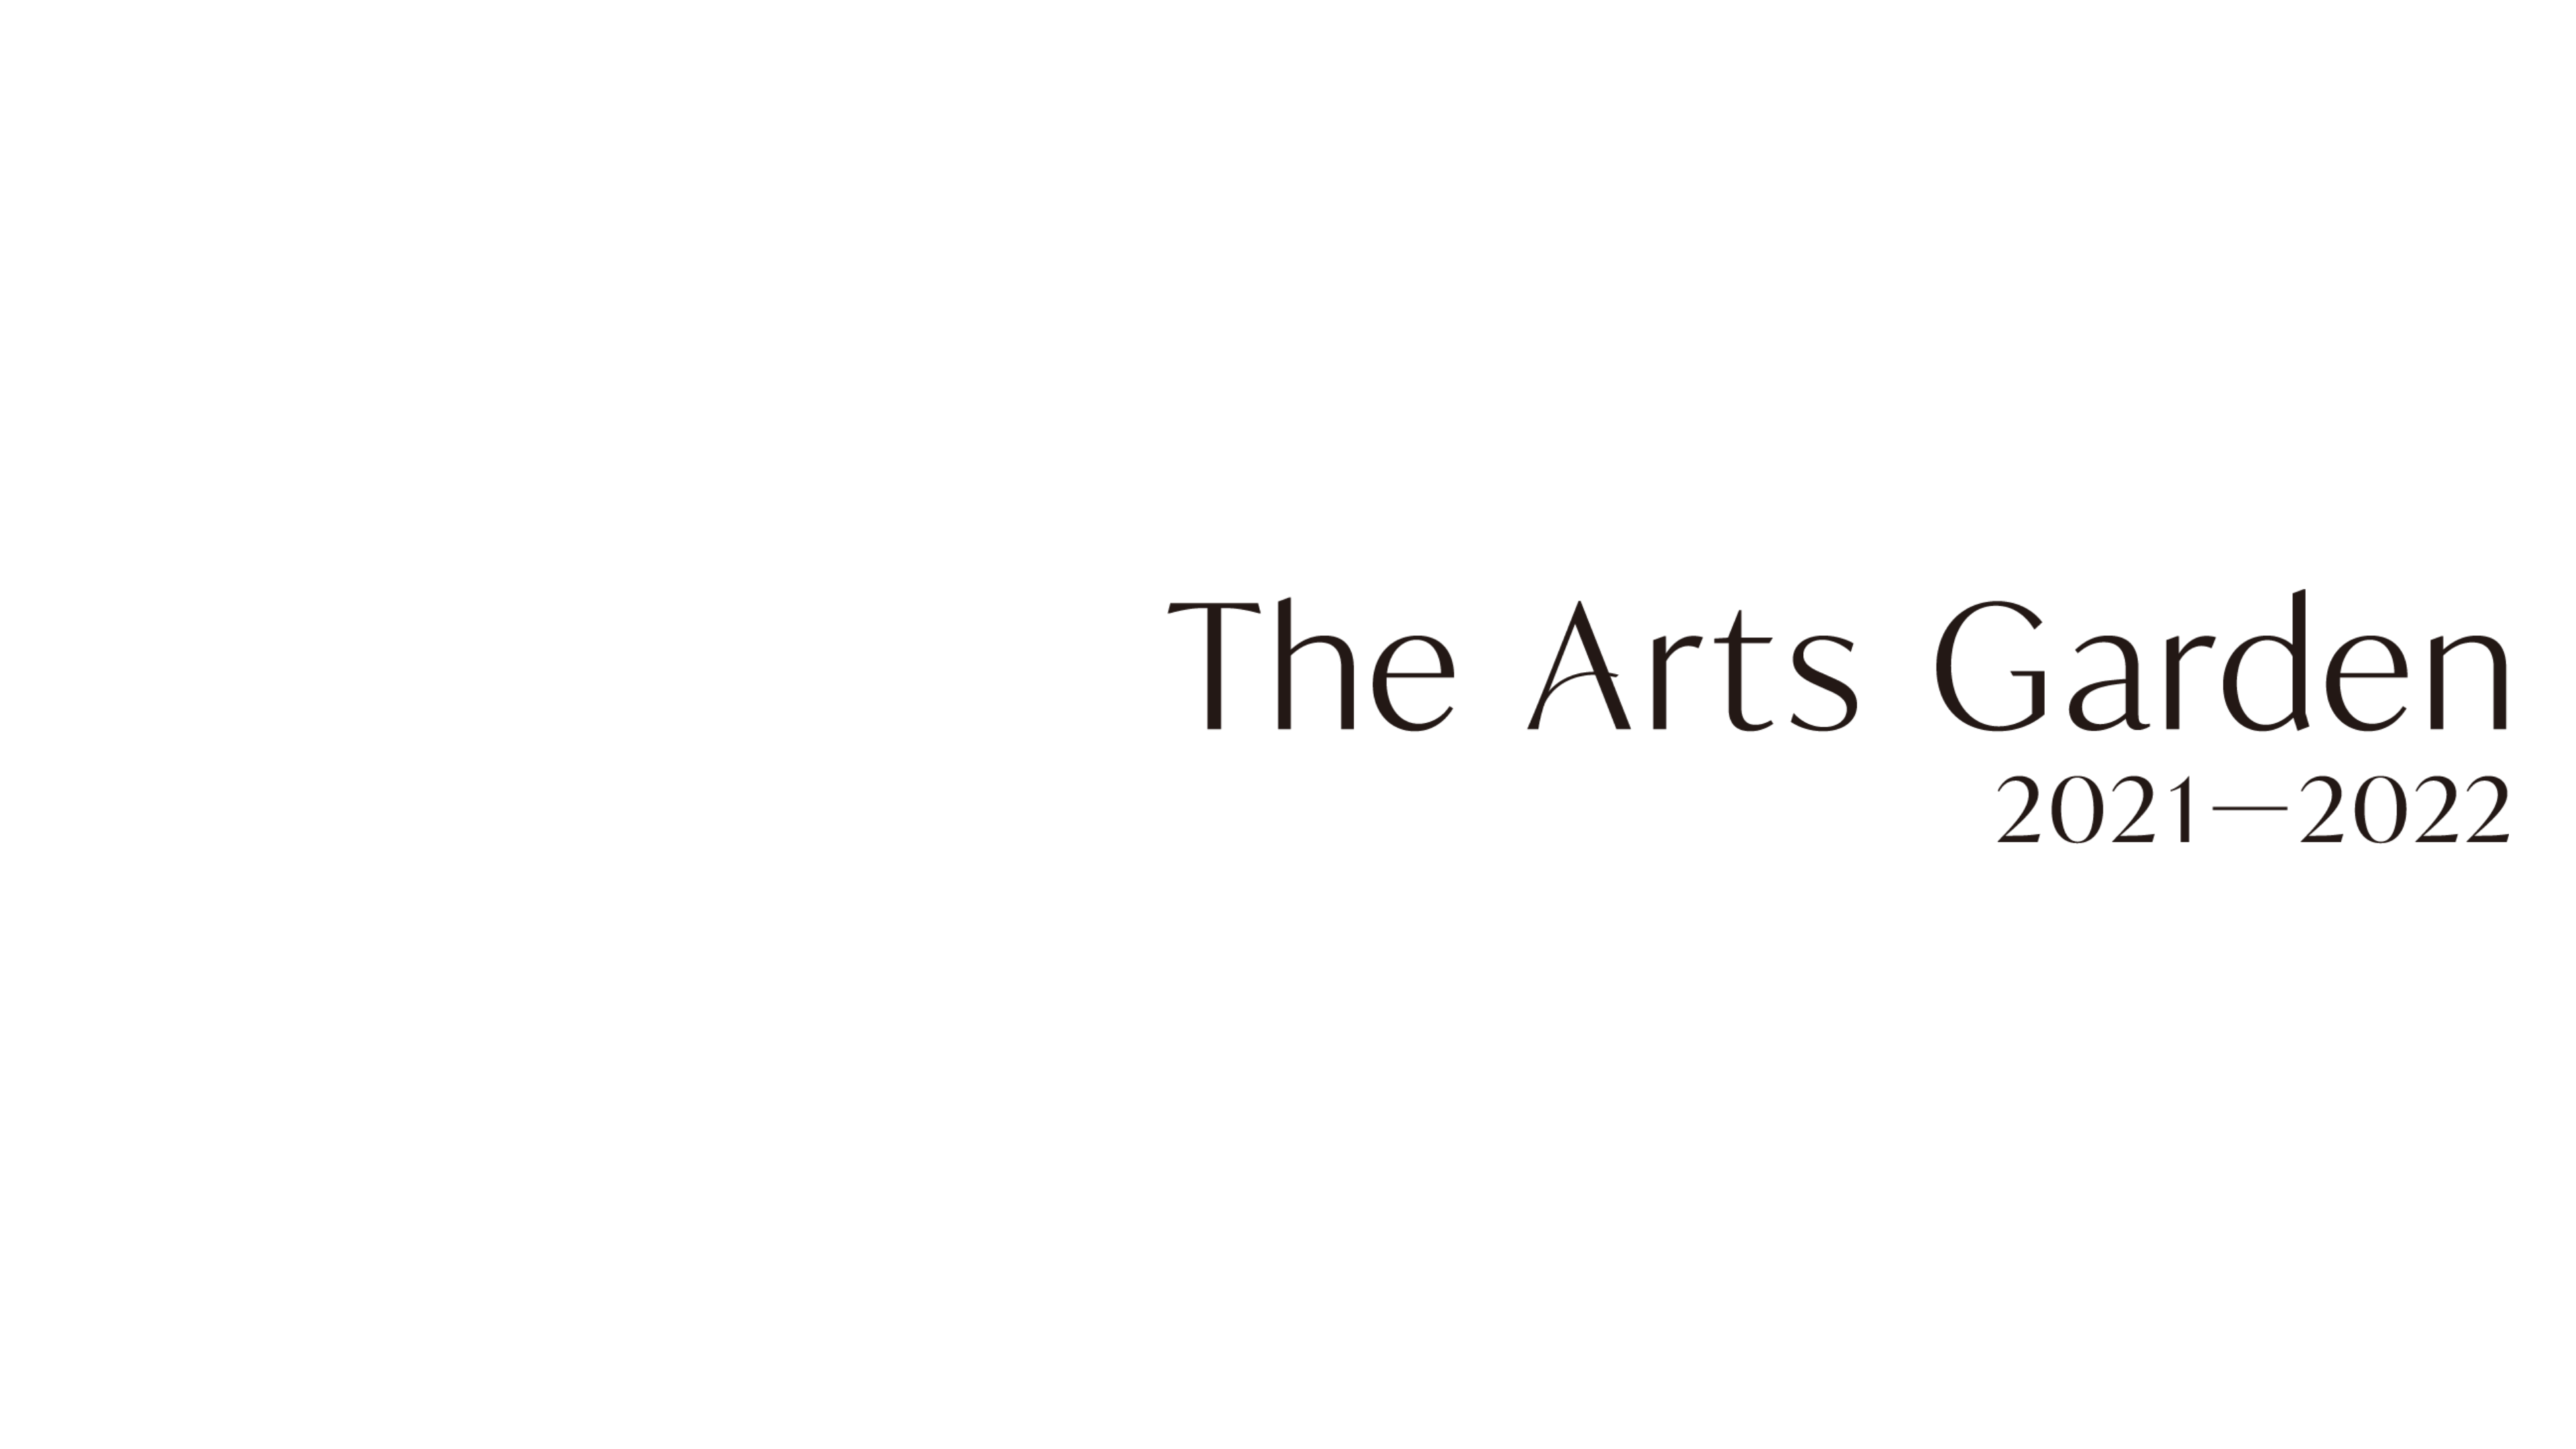 The Arts Garden 2021-2022